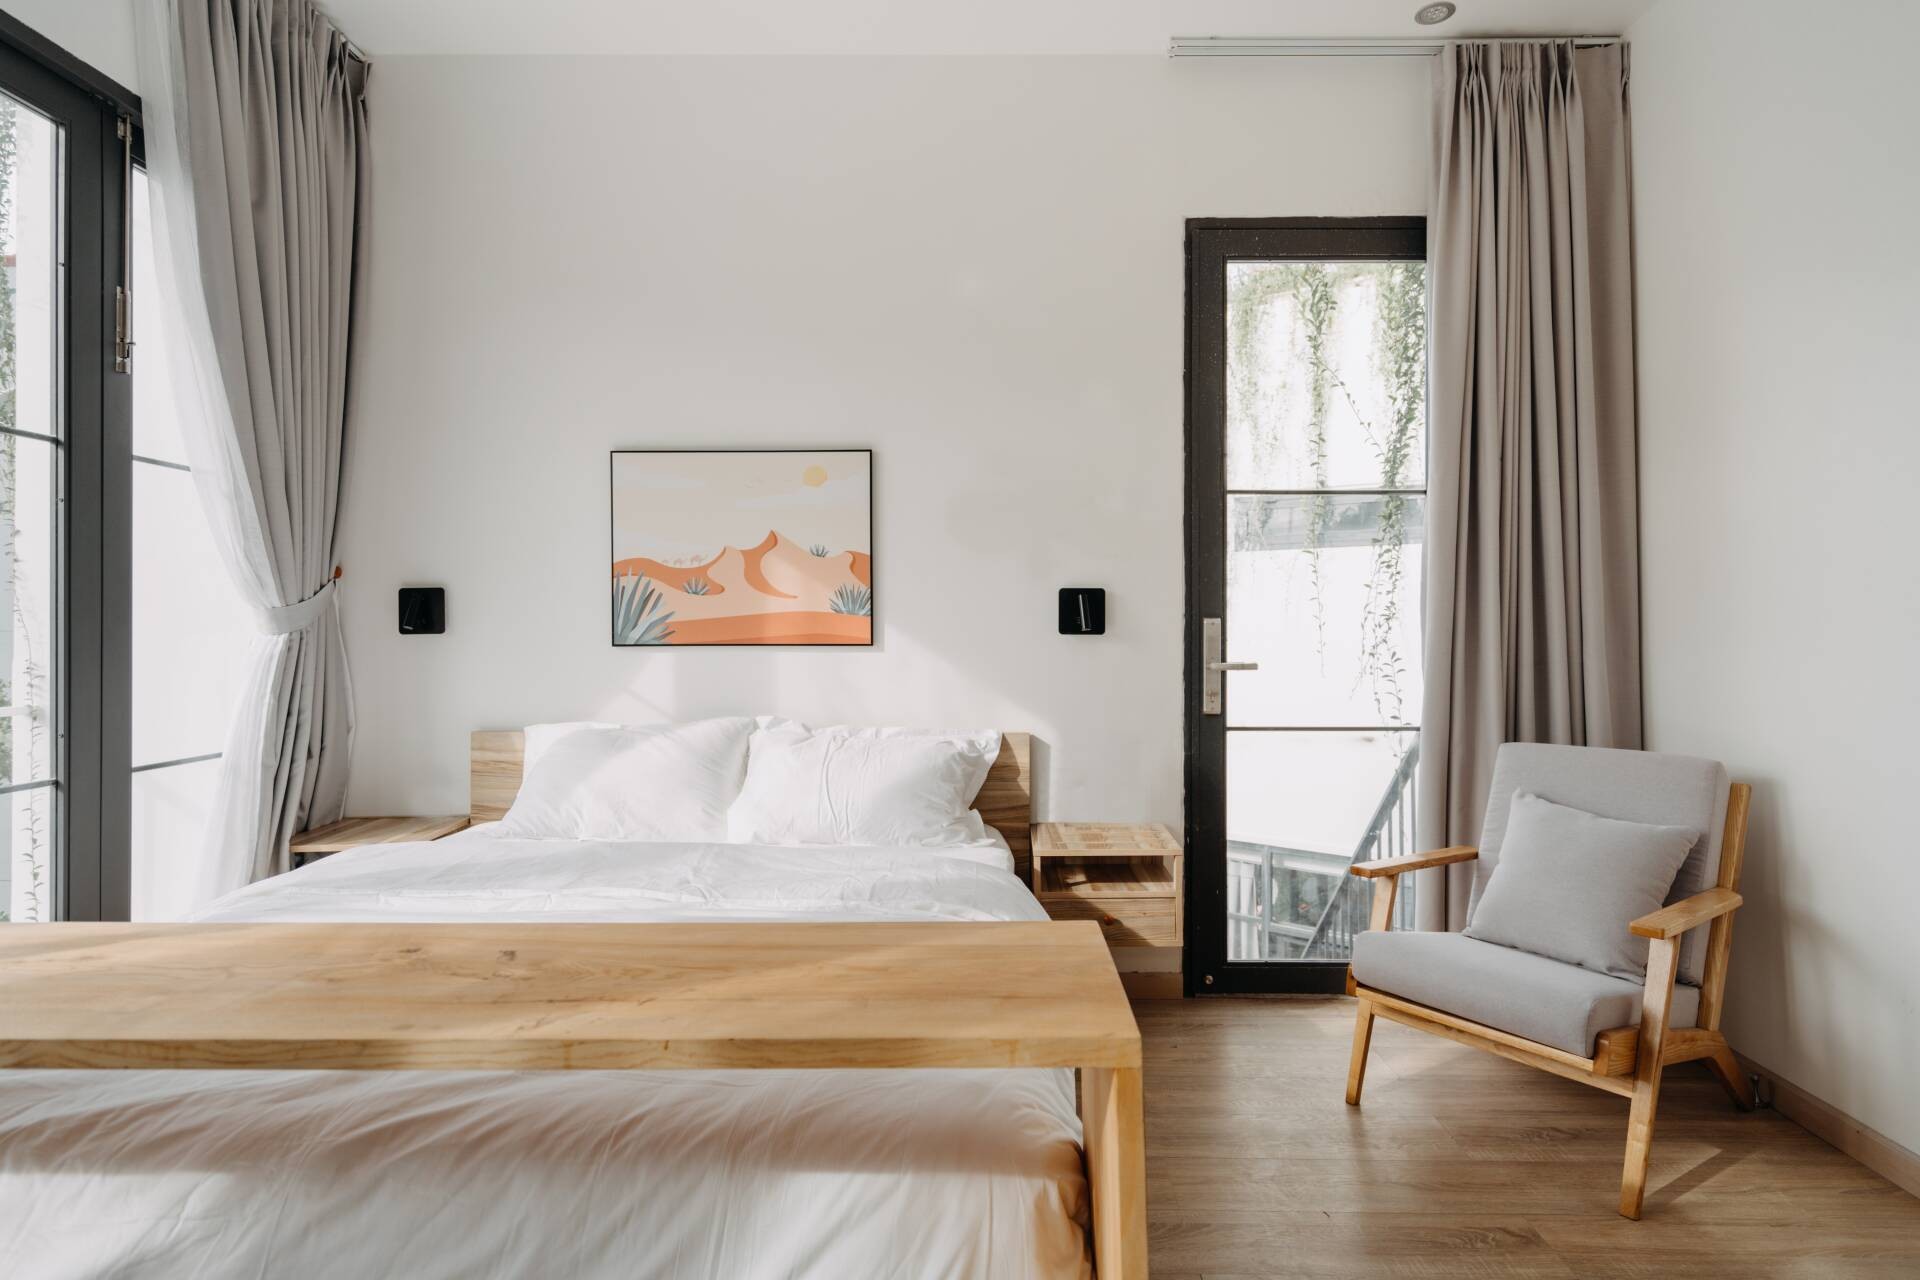 
Phòng ngủ được thiết kế&nbsp;tối giản, thiết kế ưu tiên những khoảng trống
